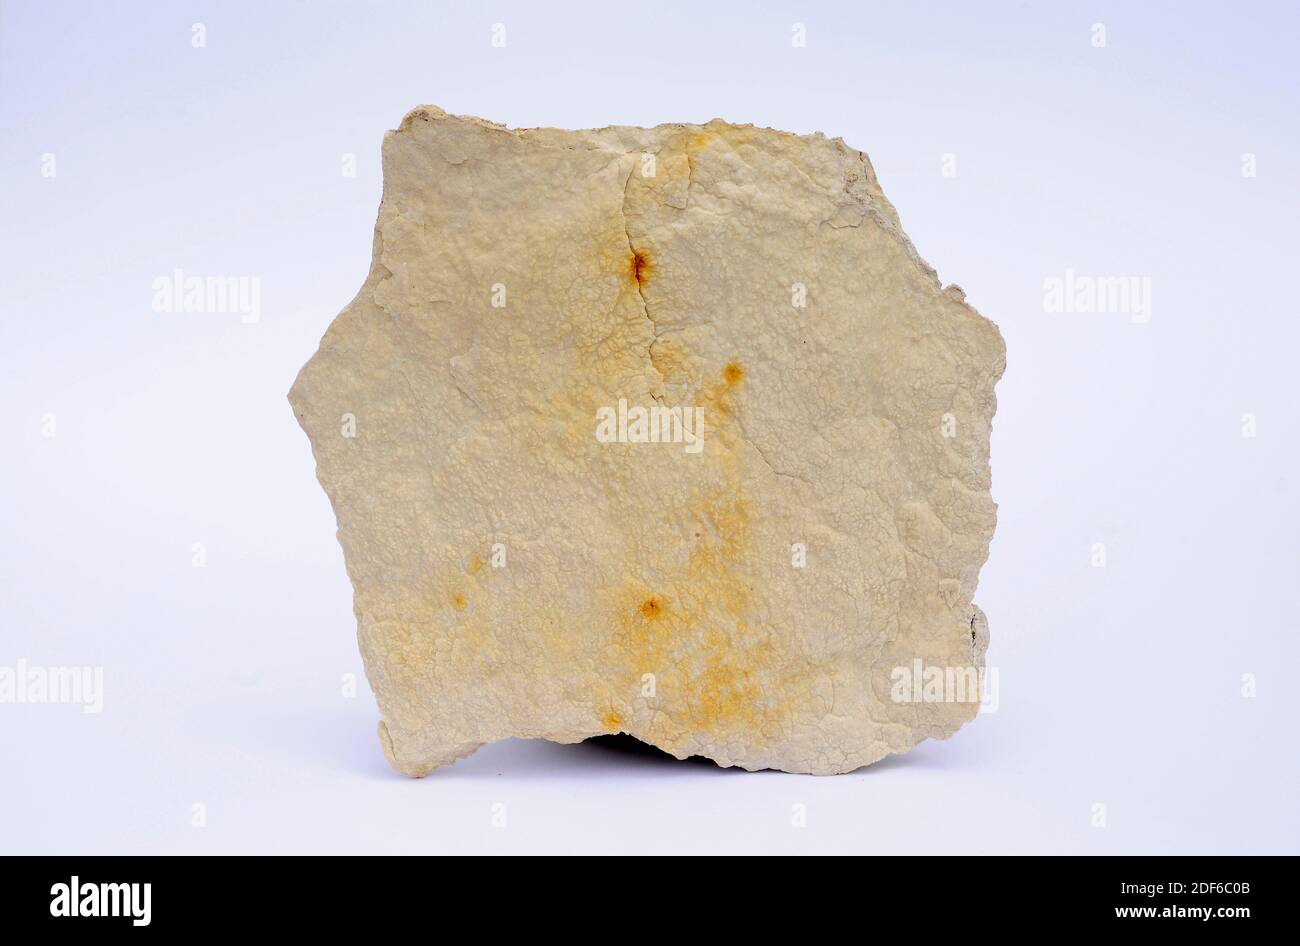 Le calcaire lithographique est une variété de calcaire à grain fin (carbonate de calcium). Cet échantillon provient de Sierra de Albarracin, Teruel, Aragon, Espagne. Banque D'Images